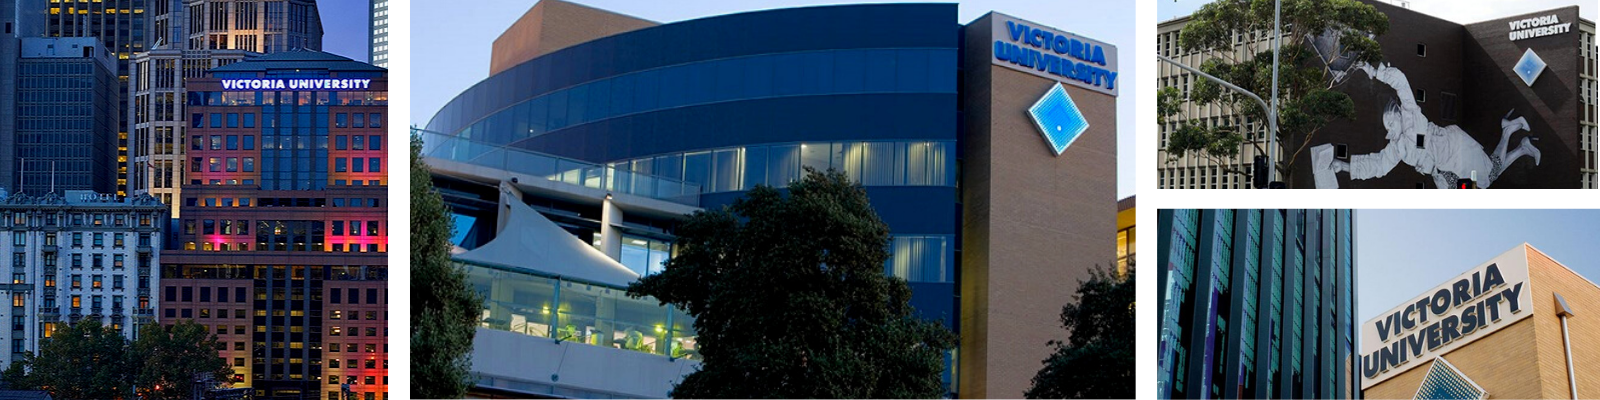 Victoria University (Melbourne Campus)